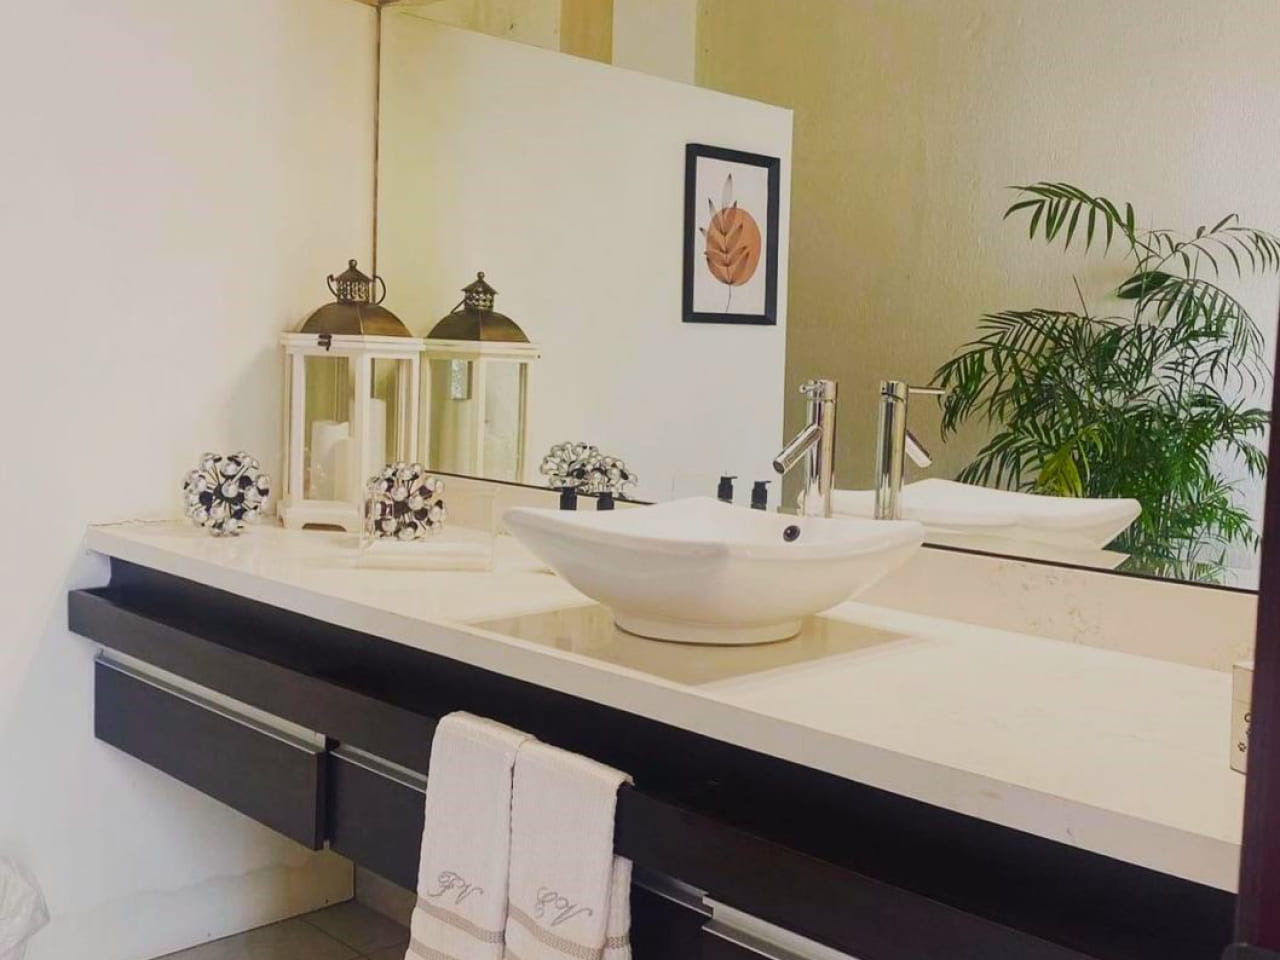 Baños completo con lavamanos,una plancha de granito color blanco, muebles de madera color negro y un espejo grande.